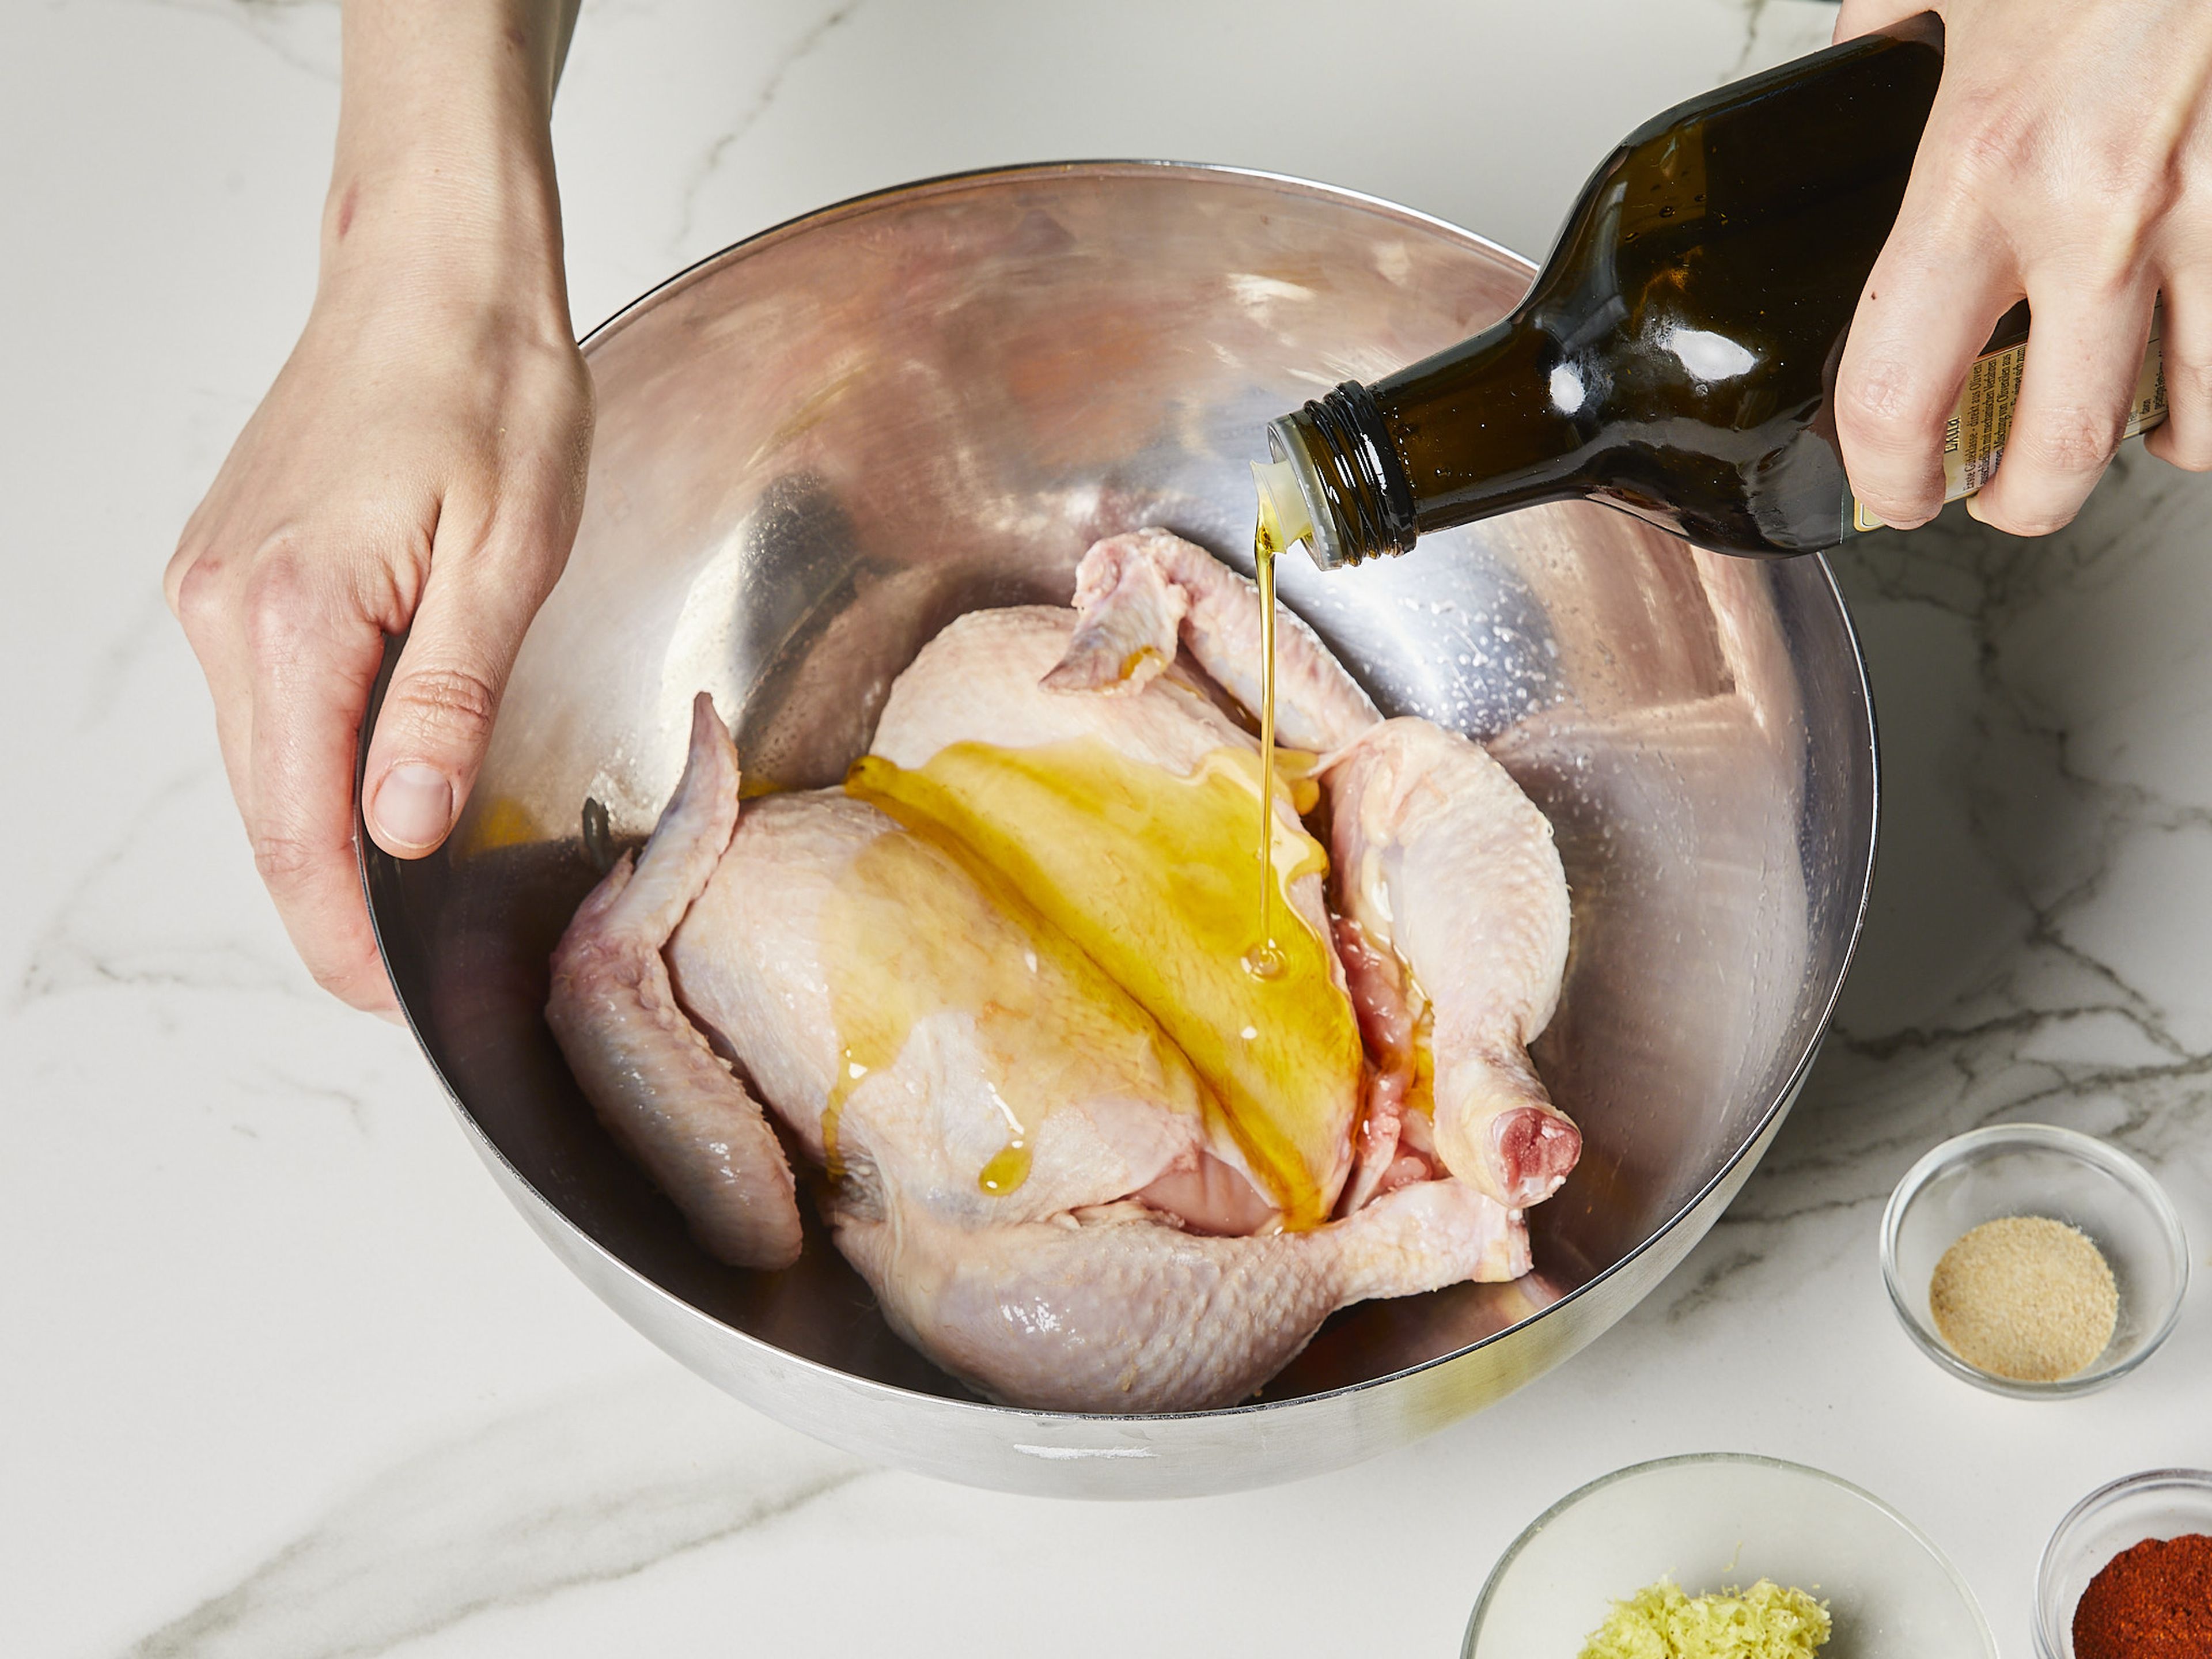 Das Hähnchen nach unserer Videoanleitung "Plattes Huhn zum Braten" vorbereiten und mit Papiertüchern trocken tupfen. Zitronenschale abreiben und Zitrone in Spalten schneiden. Für die Marinade Paprikapulver mit Zitronenabrieb, Olivenöl, Salz und Knoblauchpulver in einer kleinen Schüssel vermischen. Das vorbereitete Hähnchen damit einreiben und ca. 15–30 Min. marinieren lassen. Den Grill oder die Grillpfanne im Backofen auf ca. 220°C vorheizen.